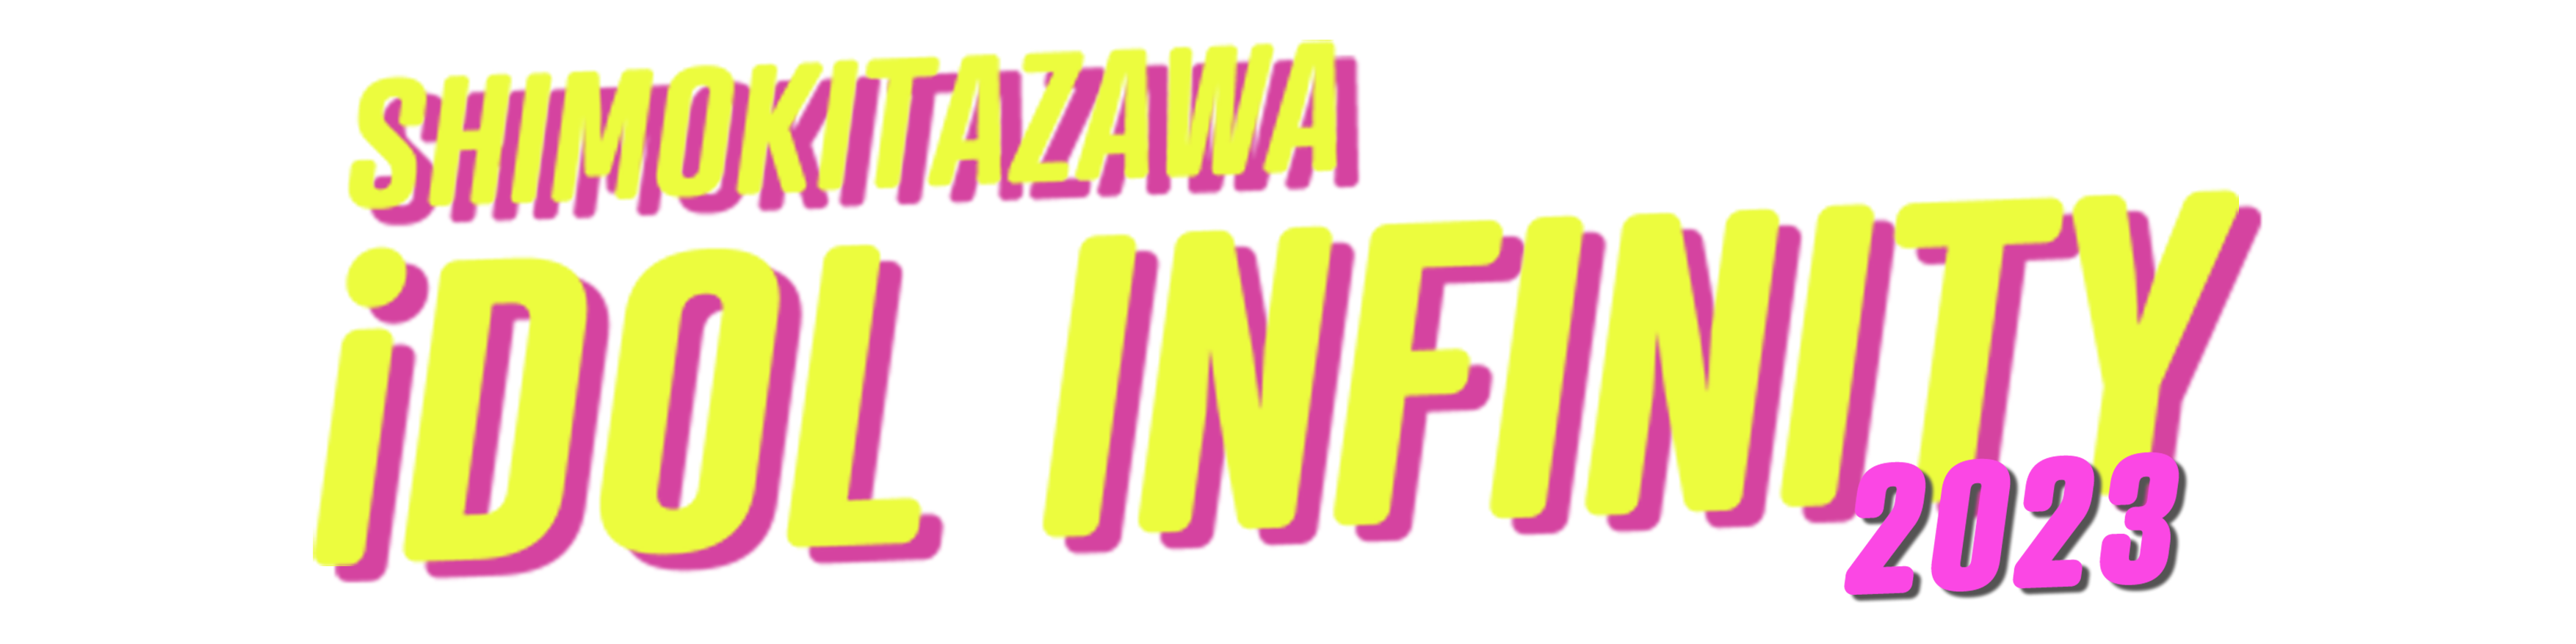 SHIMOKITAZAWA iDOL INFINITY